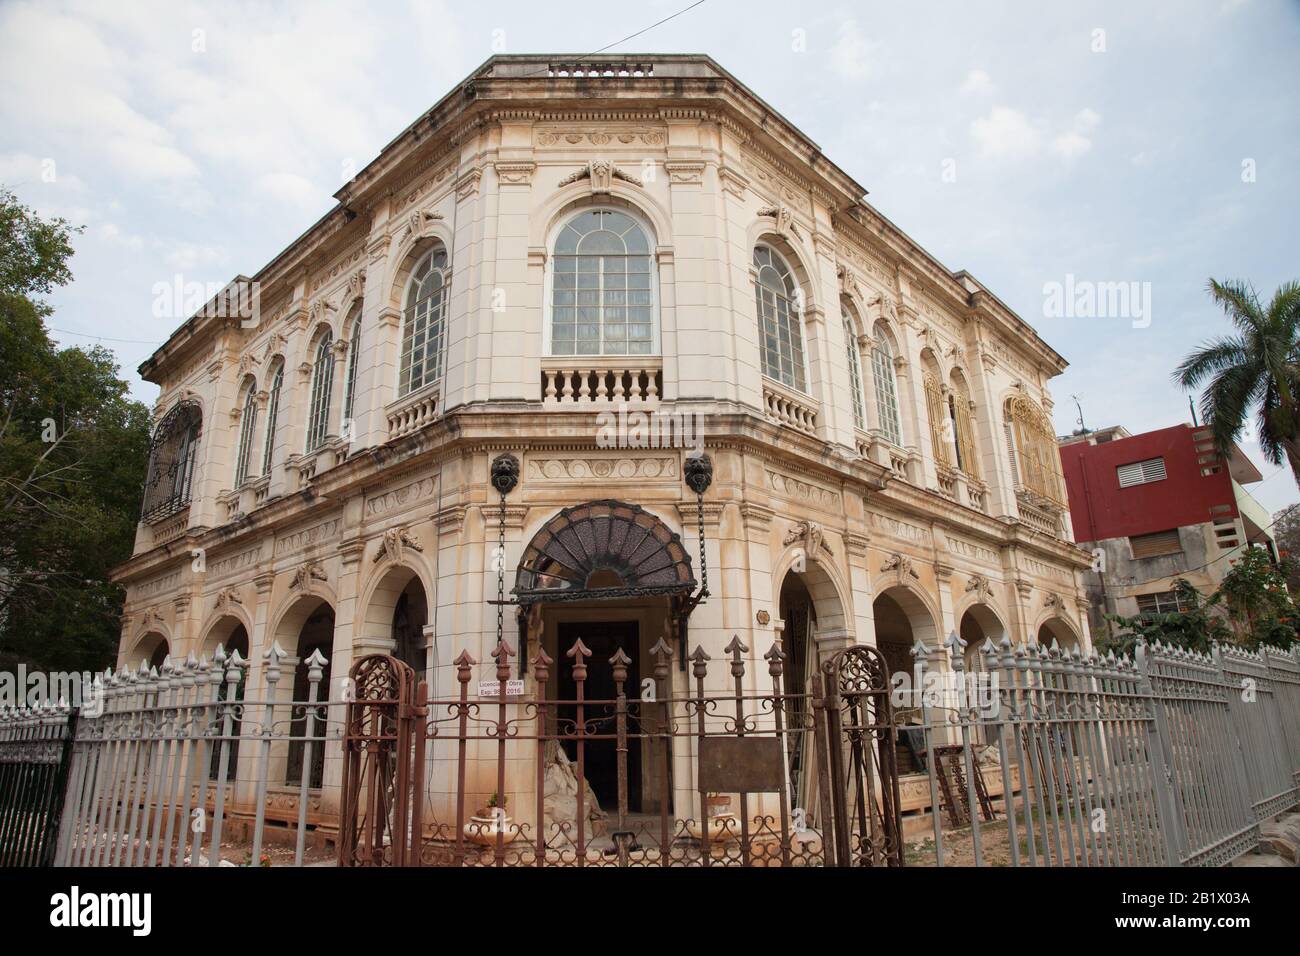 Un beau bâtiment historique à la Havane, Cuba, est clôturé alors qu'il est restauré et réparé. Banque D'Images